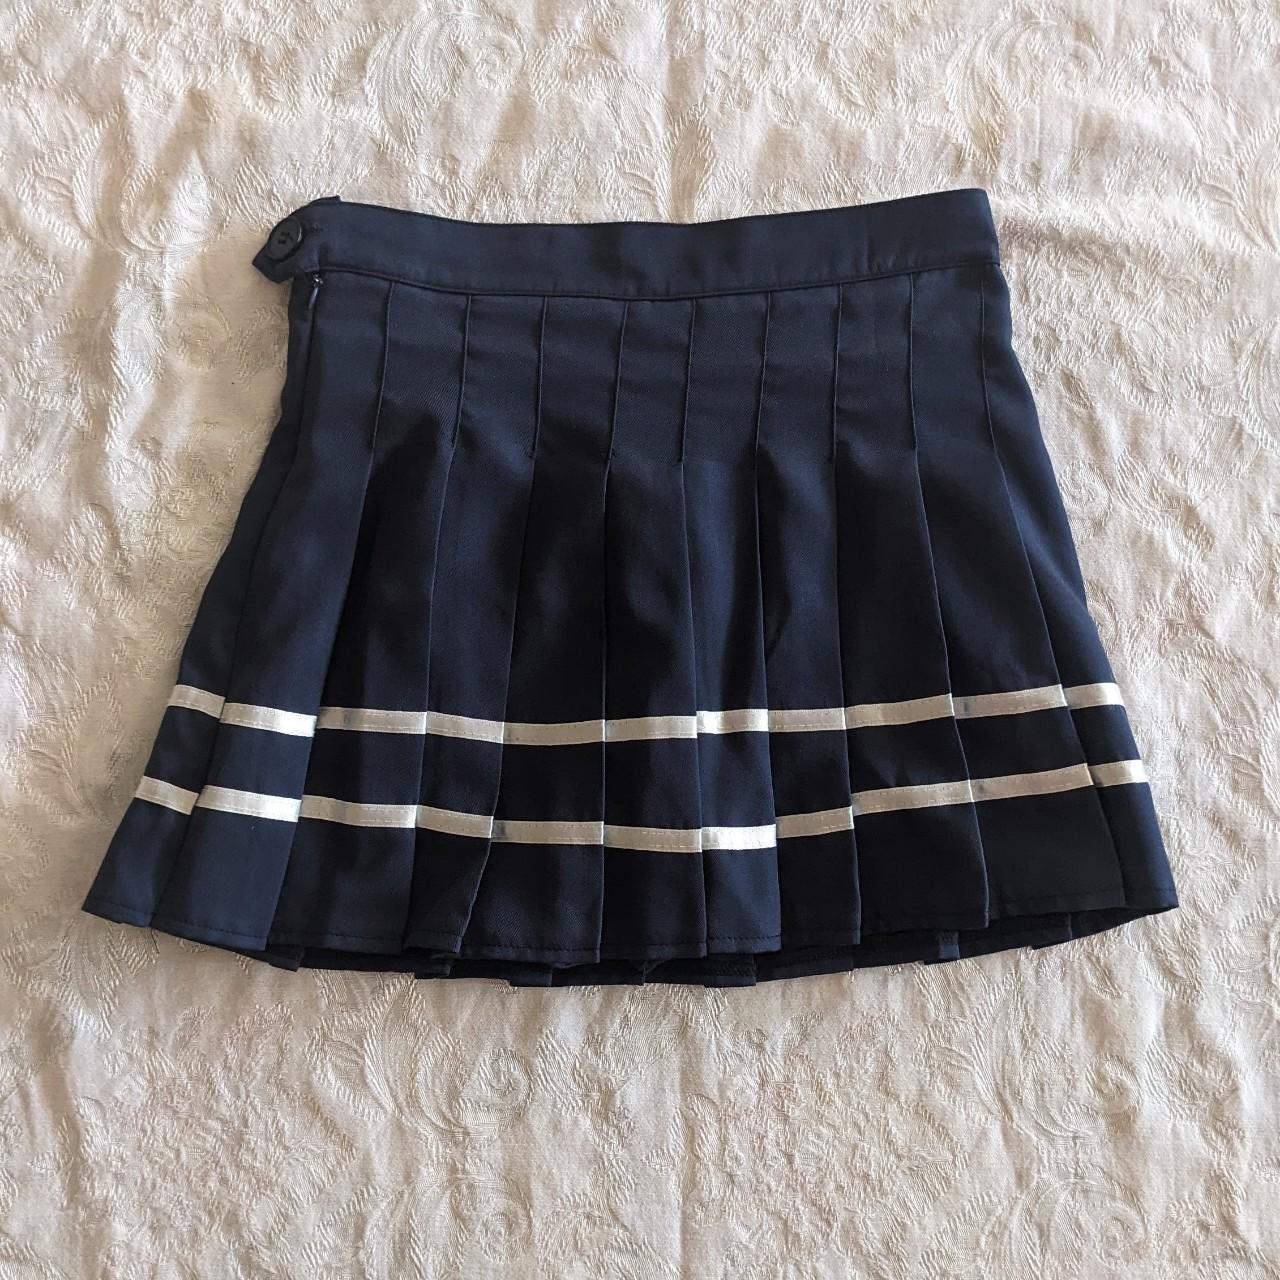 Navy blue pleated tennis skirt striped zipper and... - Depop